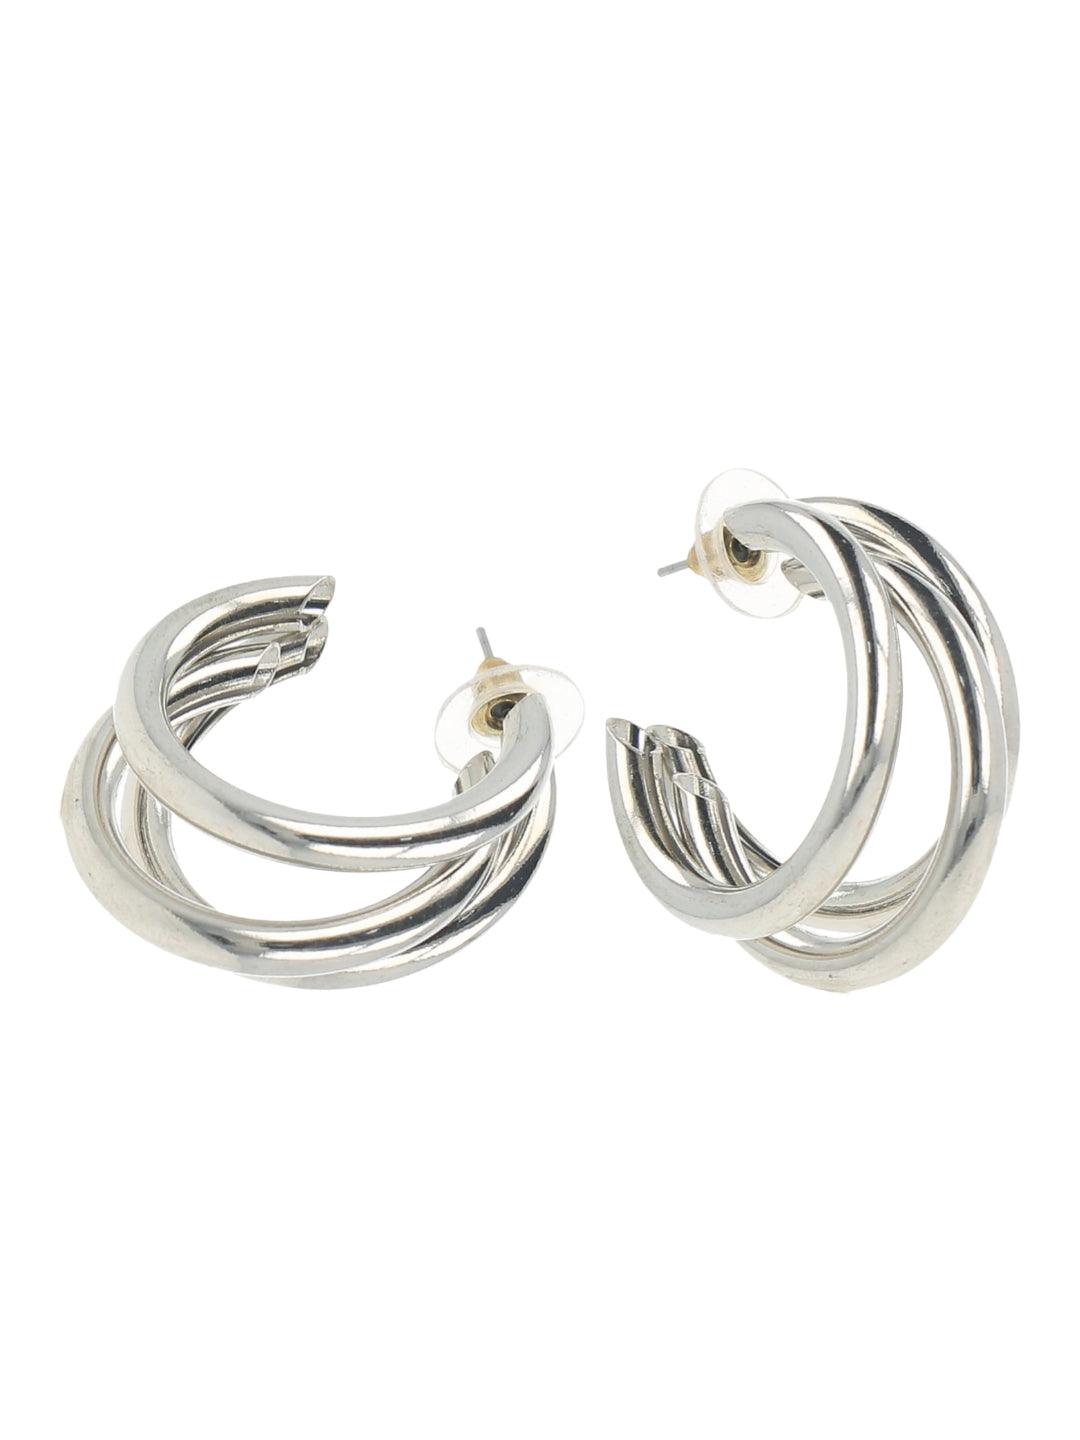 Ishhaara Triple Hoop Earrings - Silver